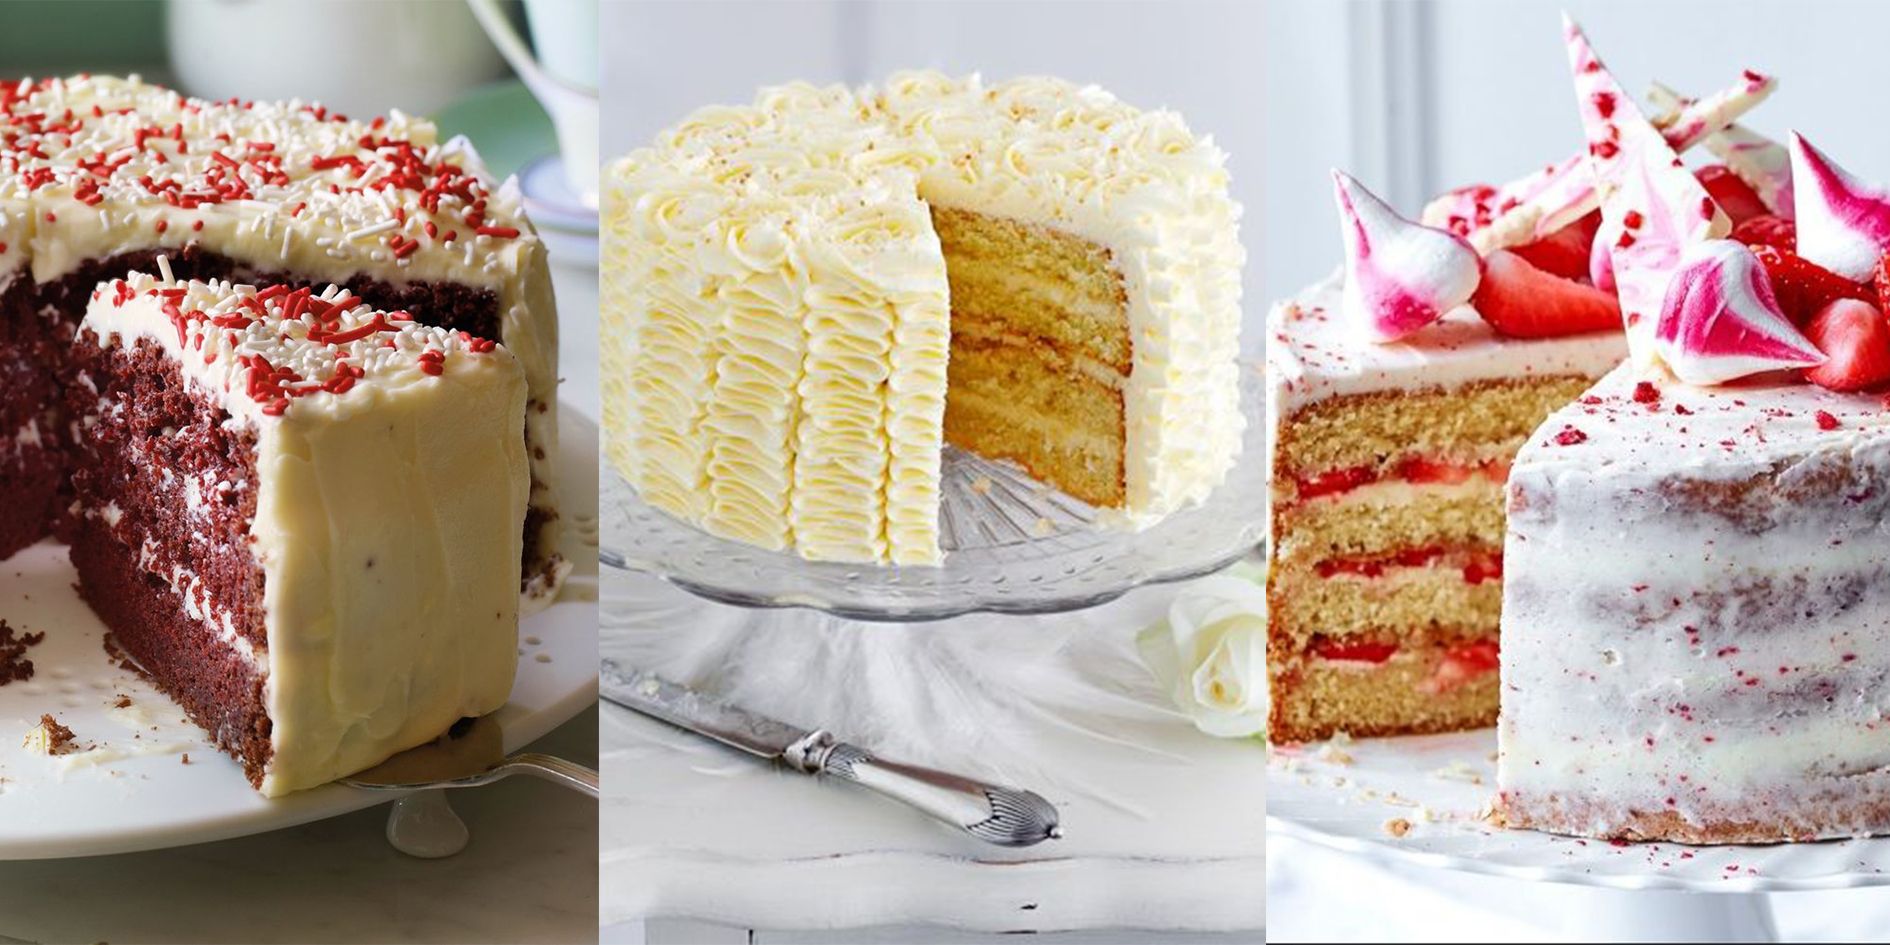 23 Housewarming cakes ideas  housewarming cake house cake cake decorating